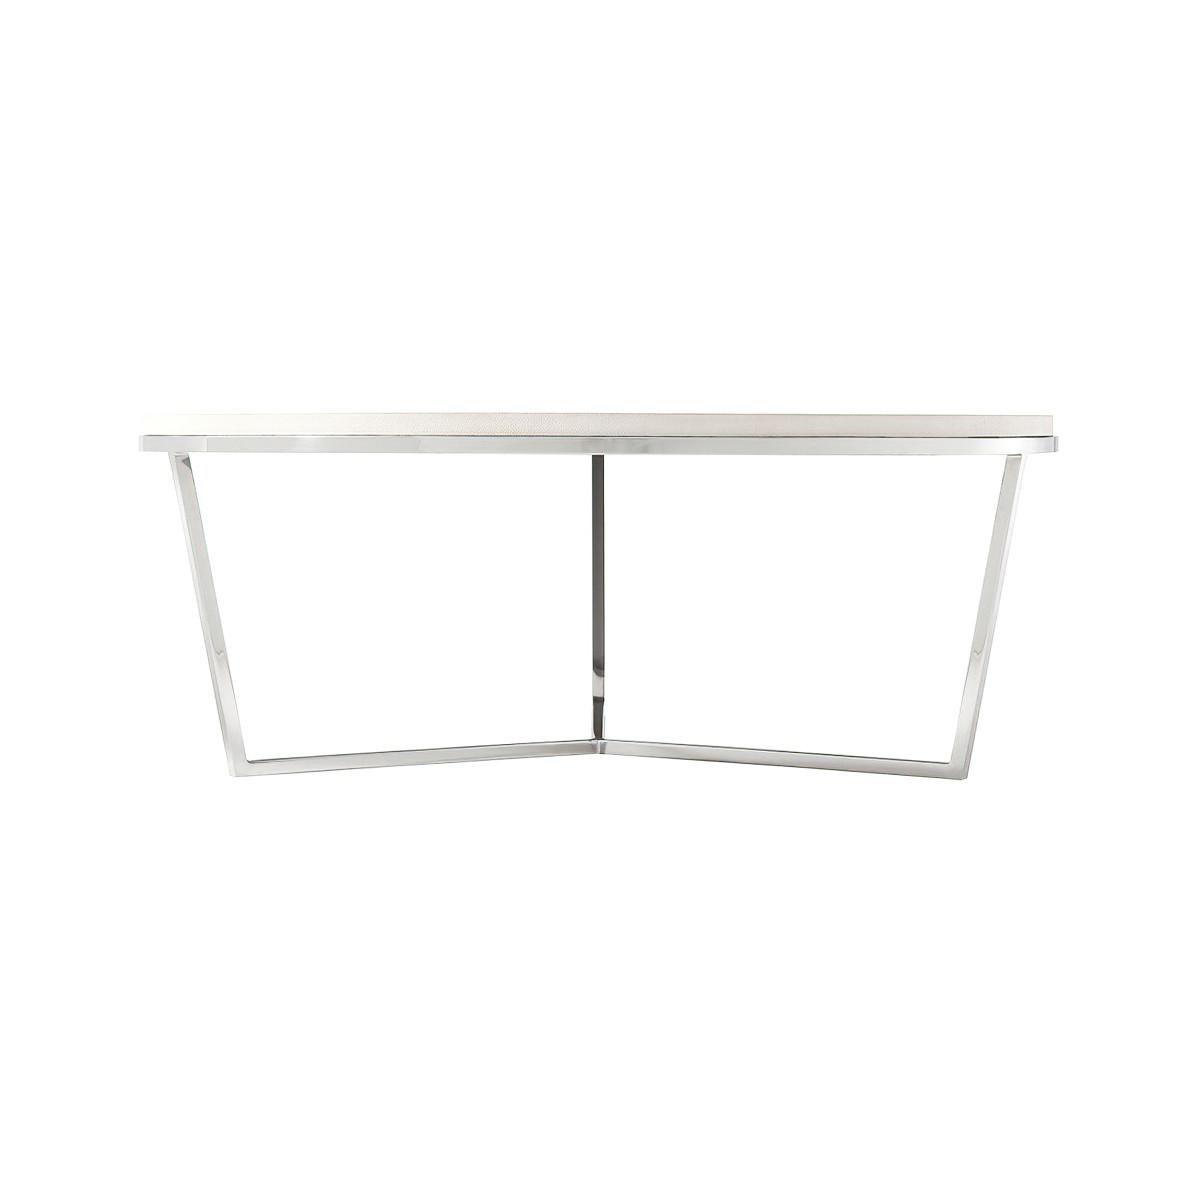 Une table basse moderne en cuir avec un bord en escalier. Ce plateau circulaire en cuir gaufré repose sur une base en finition nickel poli.

Dimensions : 47,25